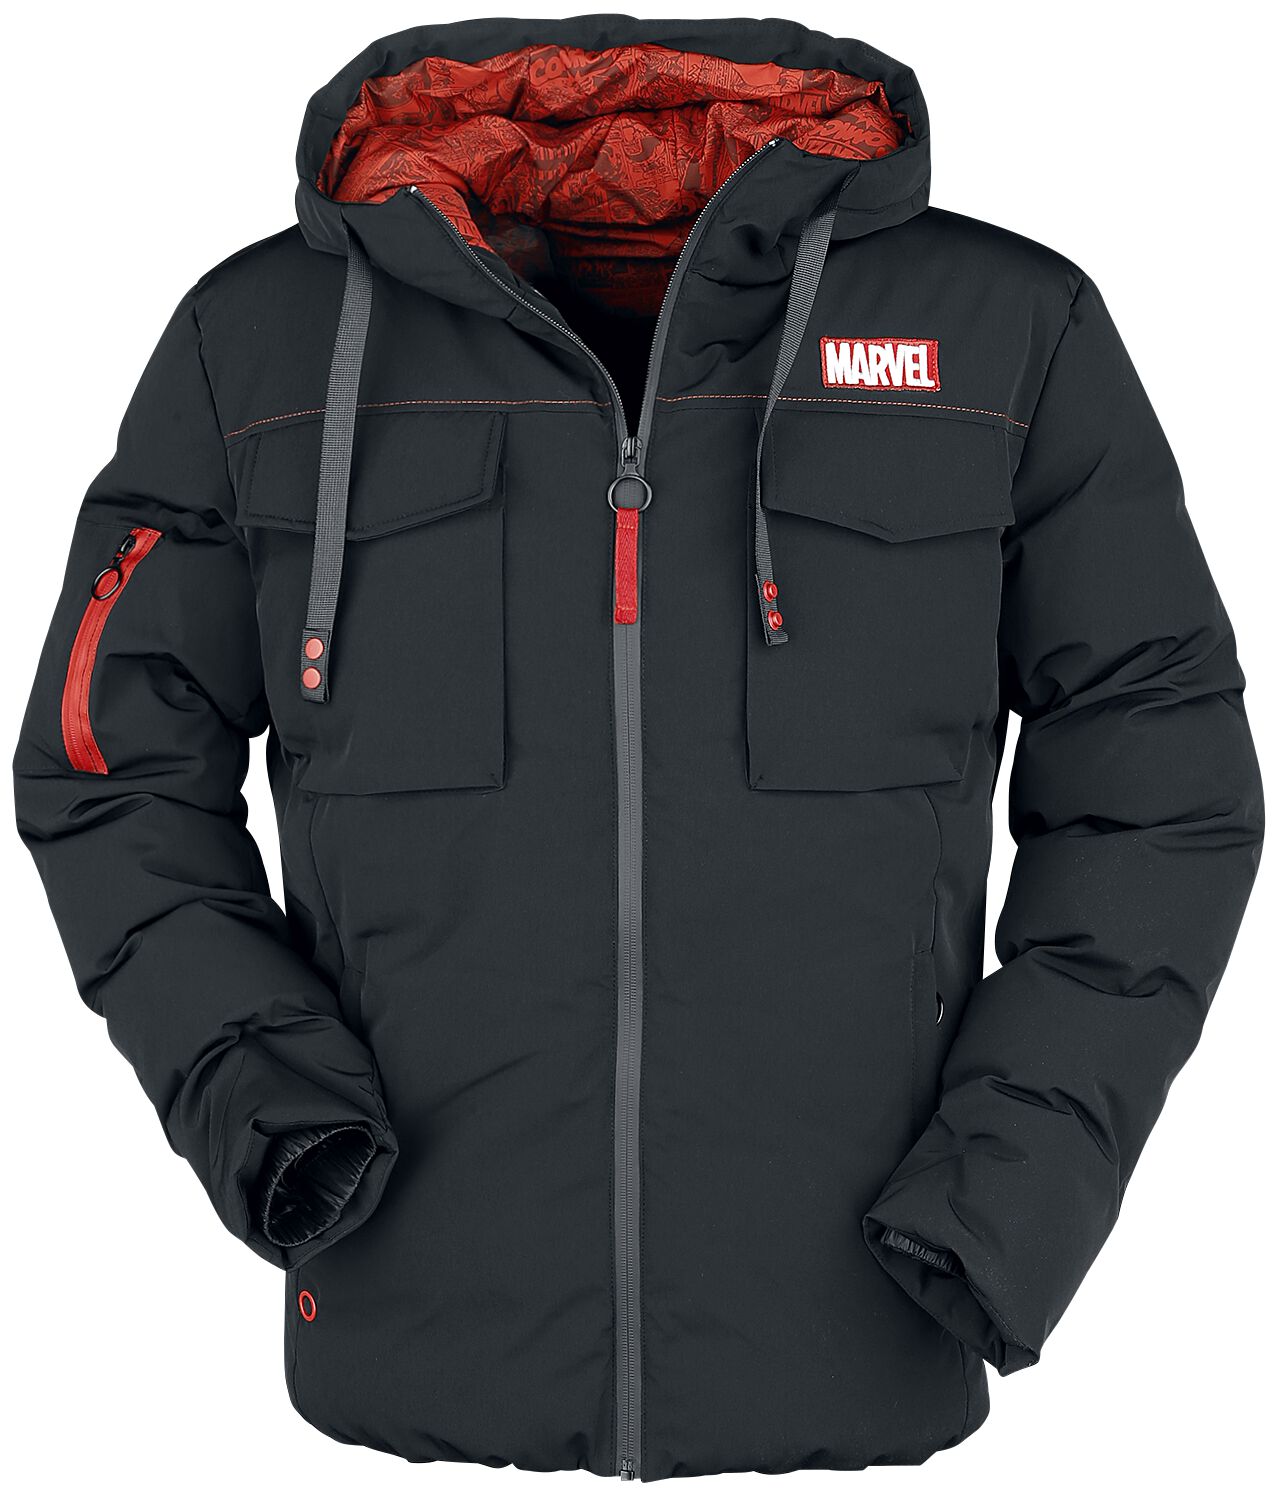 Marvel - Marvel Winterjacke - Marvel Logo - S bis XL - für Männer - Größe M - schwarz  - EMP exklusives Merchandise! von Marvel